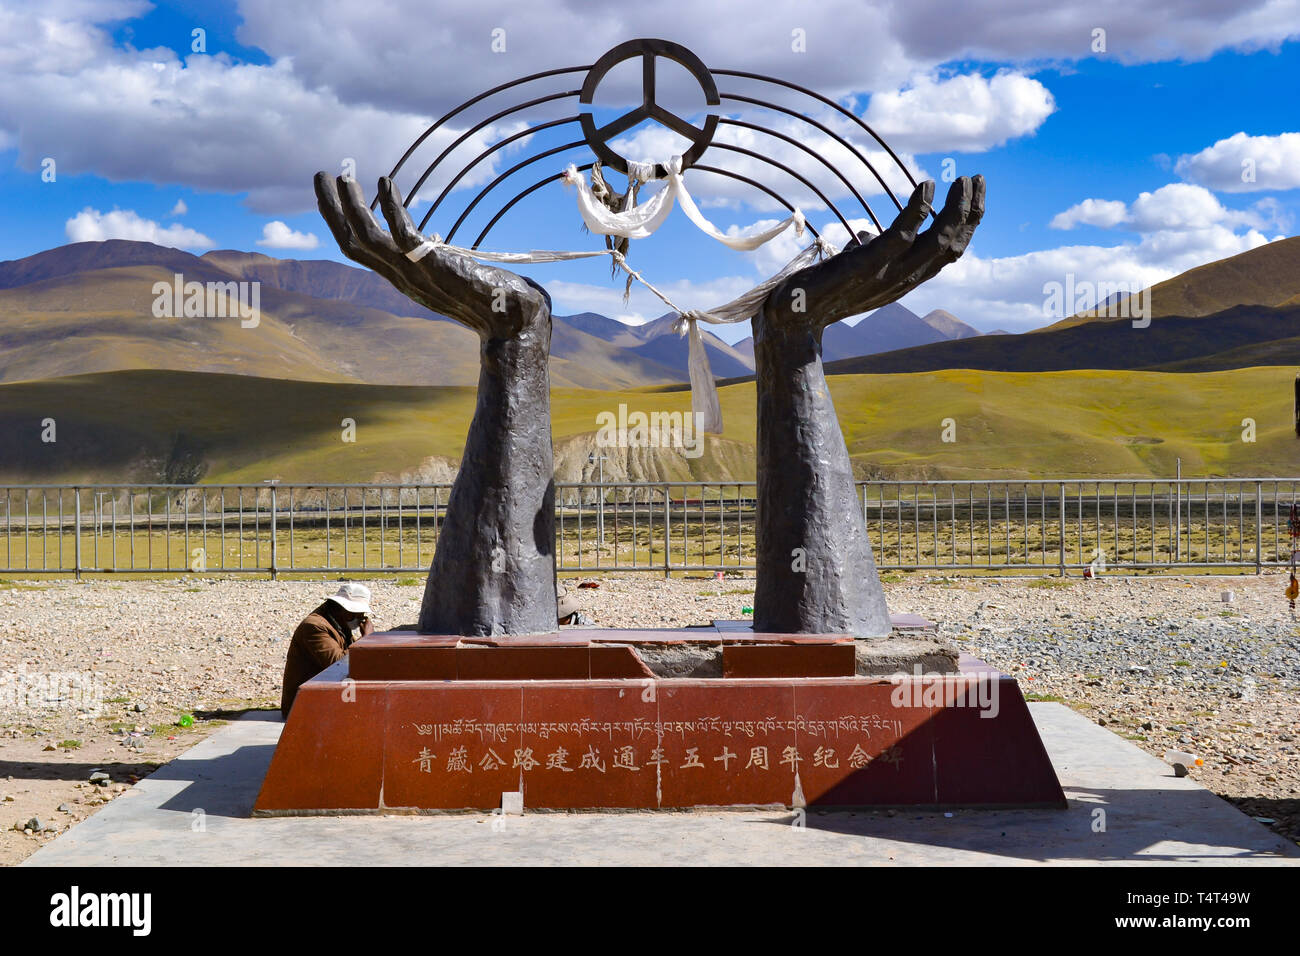 Le monument du Qinghai-Tibet railway, un chemin de fer de haute altitude sur le plateau tibétain au Tibet, Chine Banque D'Images